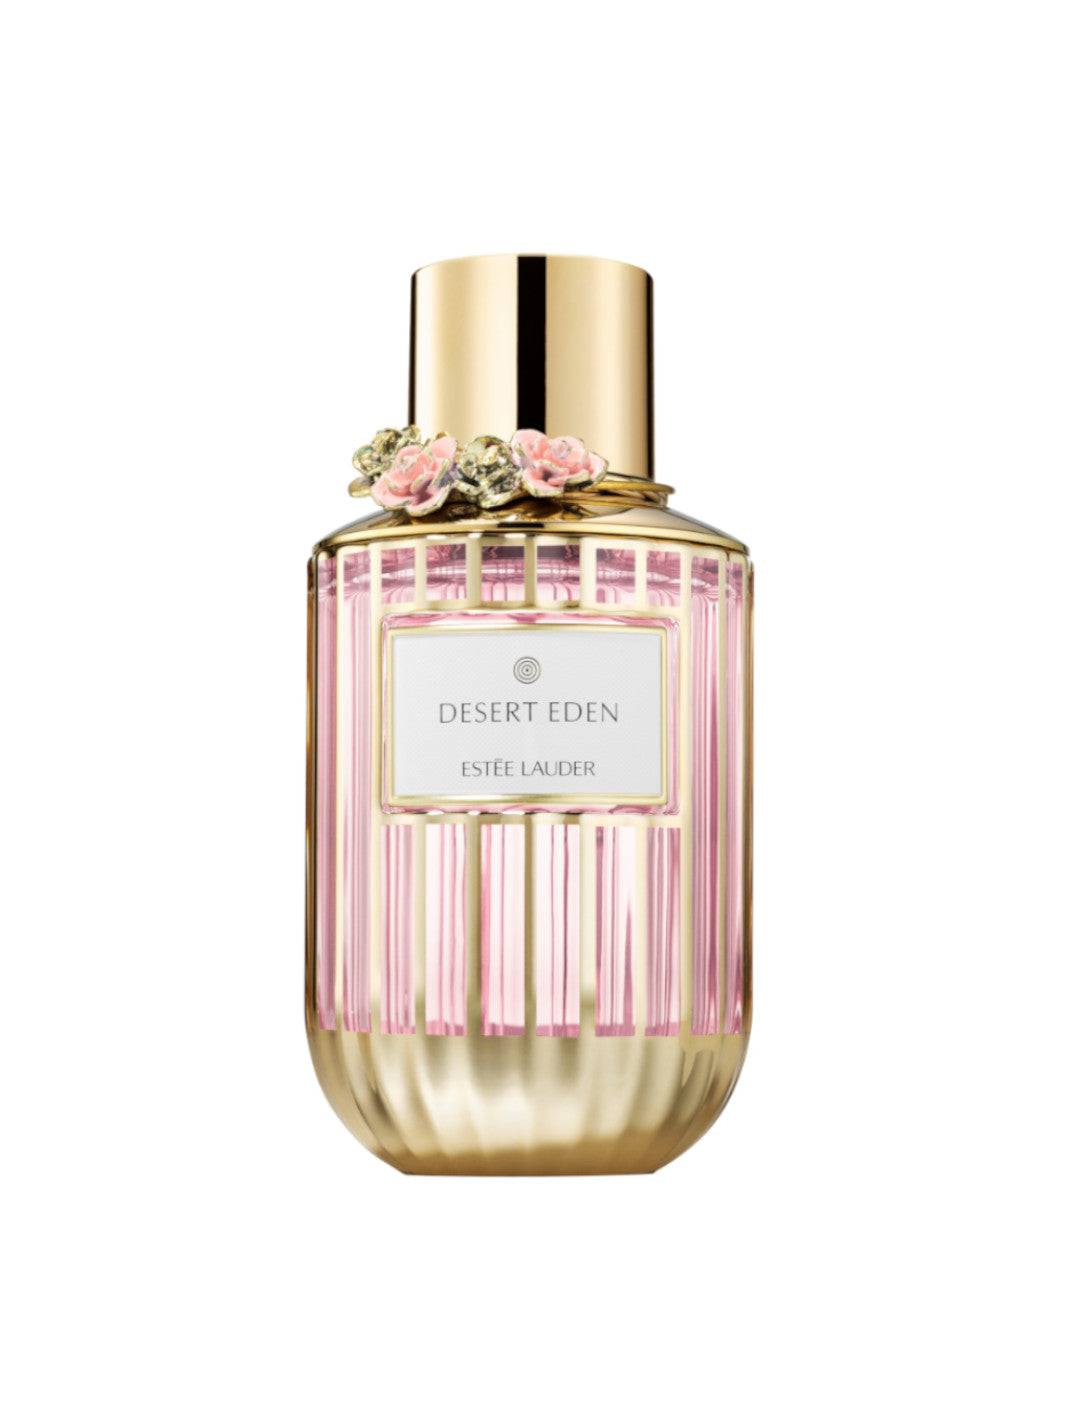 Desert Eden Eau de Parfum Spray EDP - Limited Edition Bottle